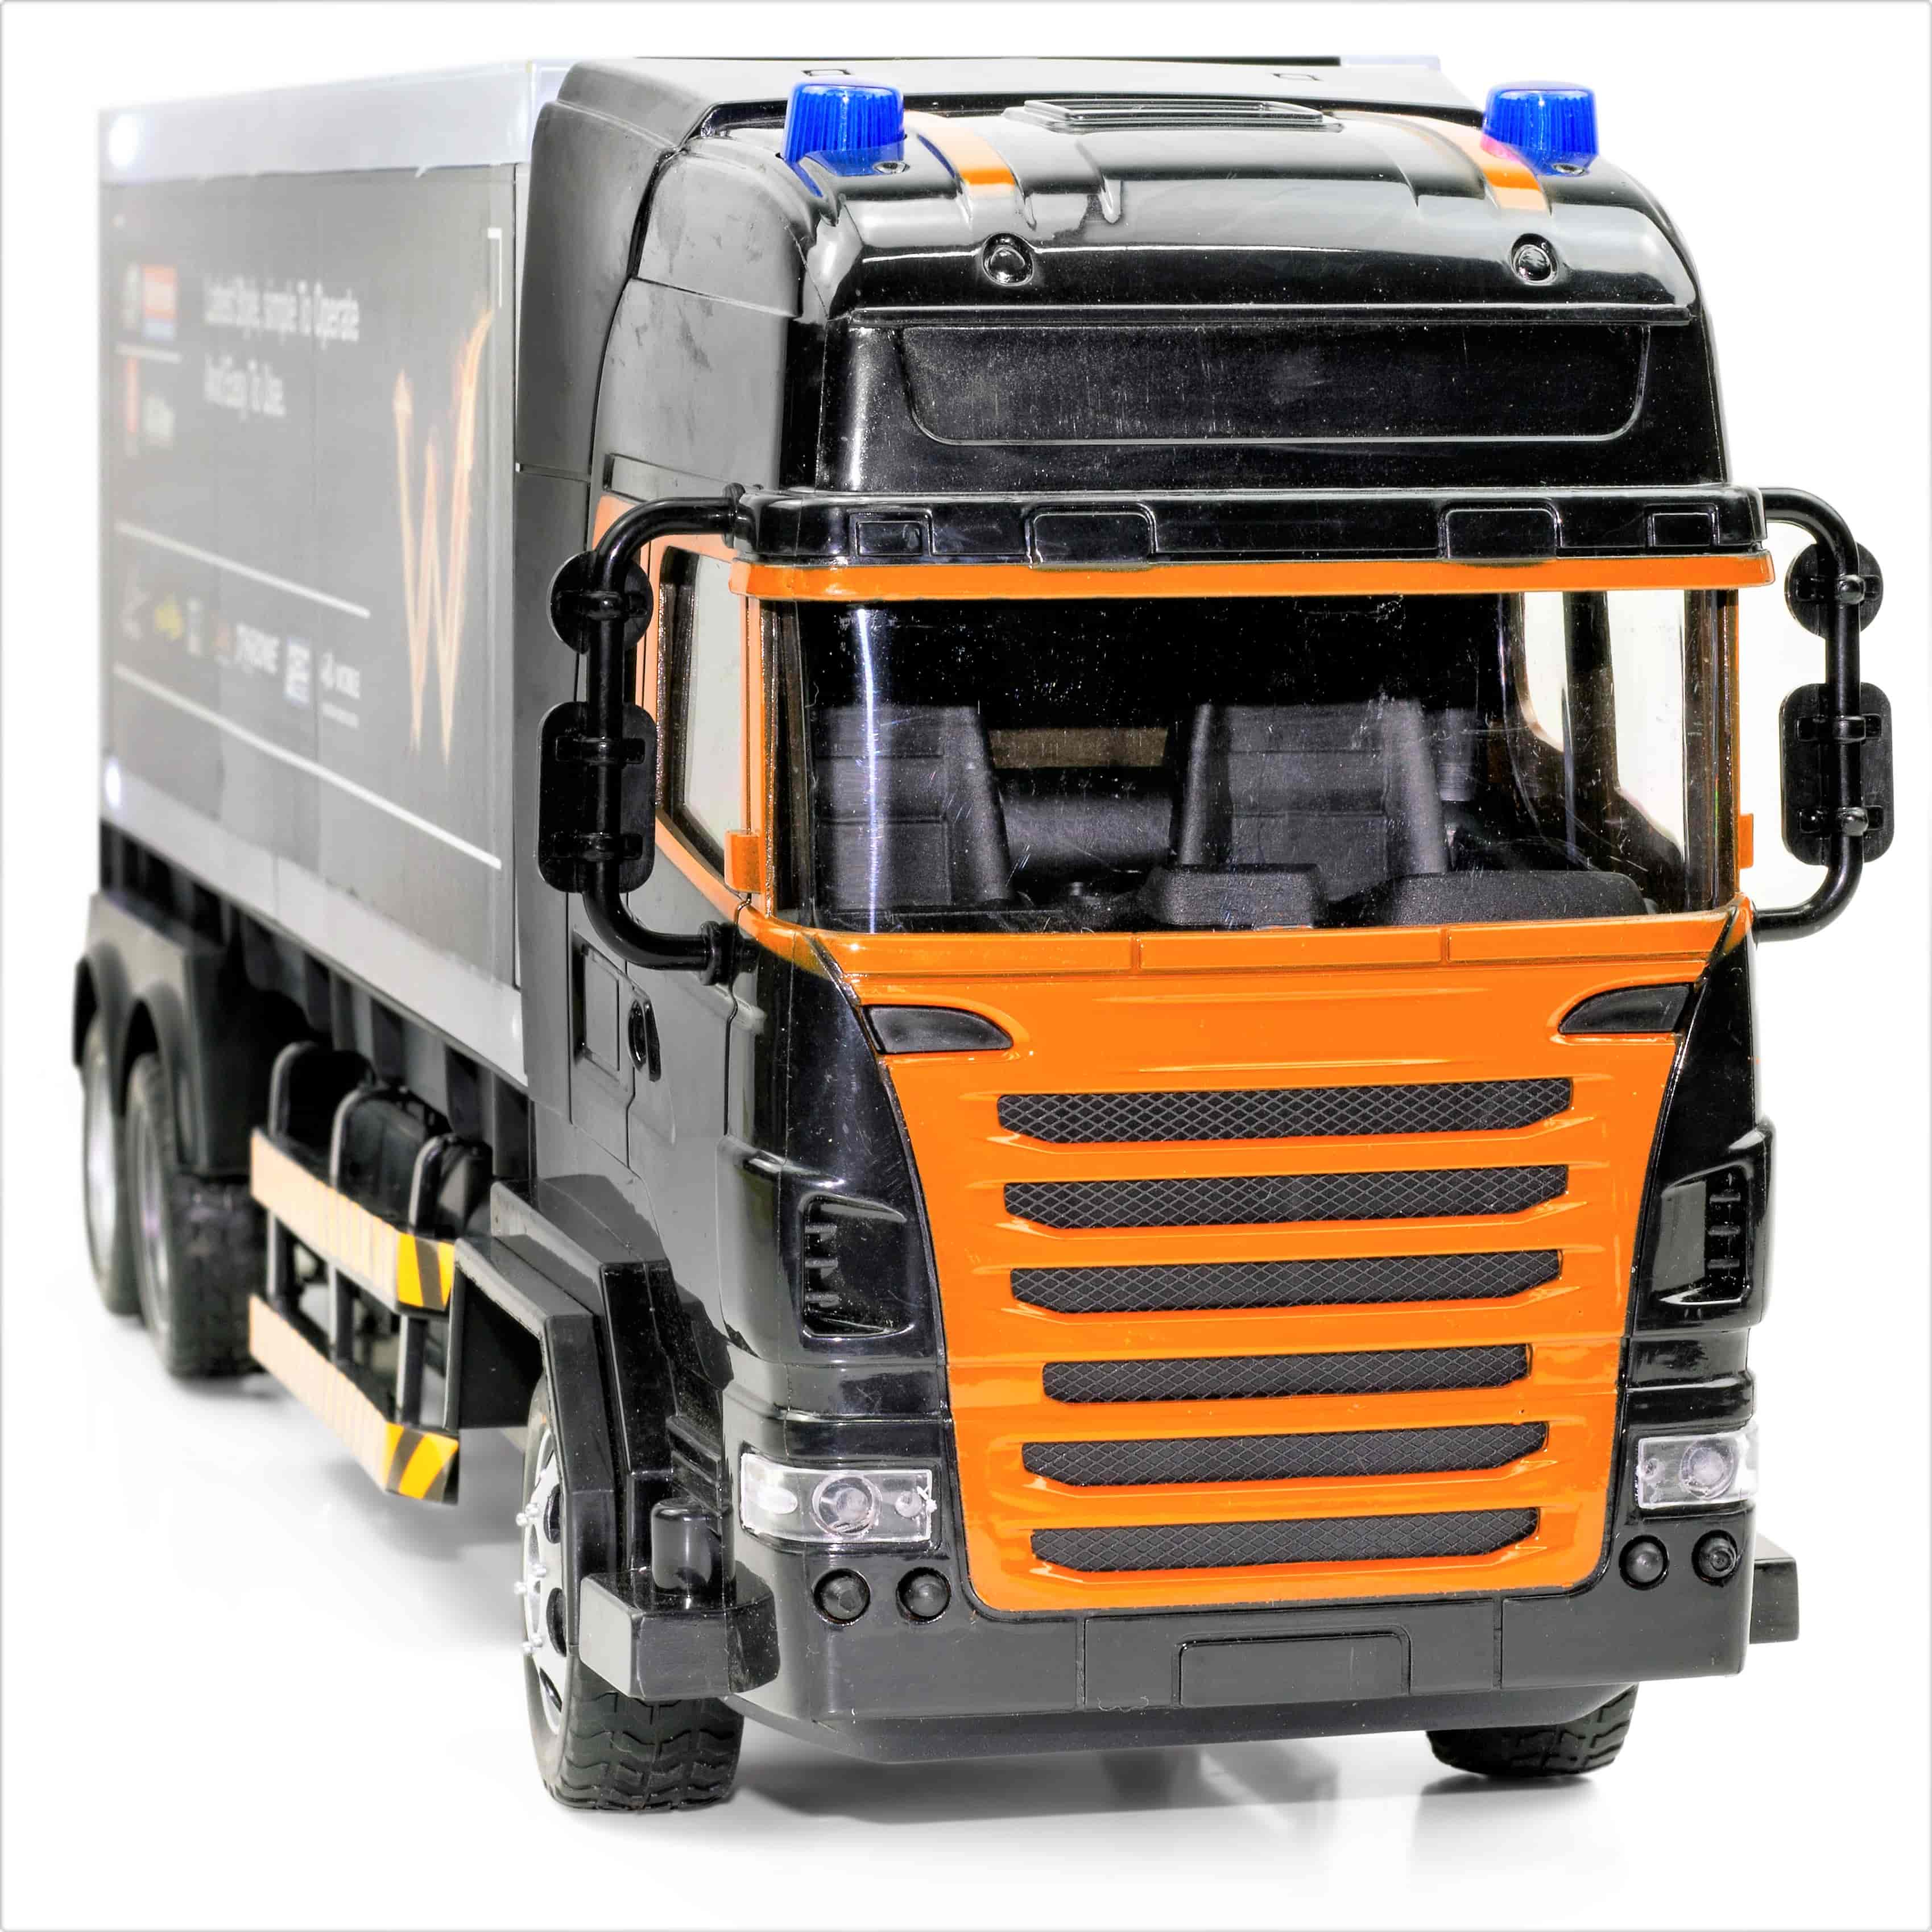 Spielzeug RC Kabelloses Ferngesteuerte Auto 50 cm lang LKW Truck mit LED Licht und Akku